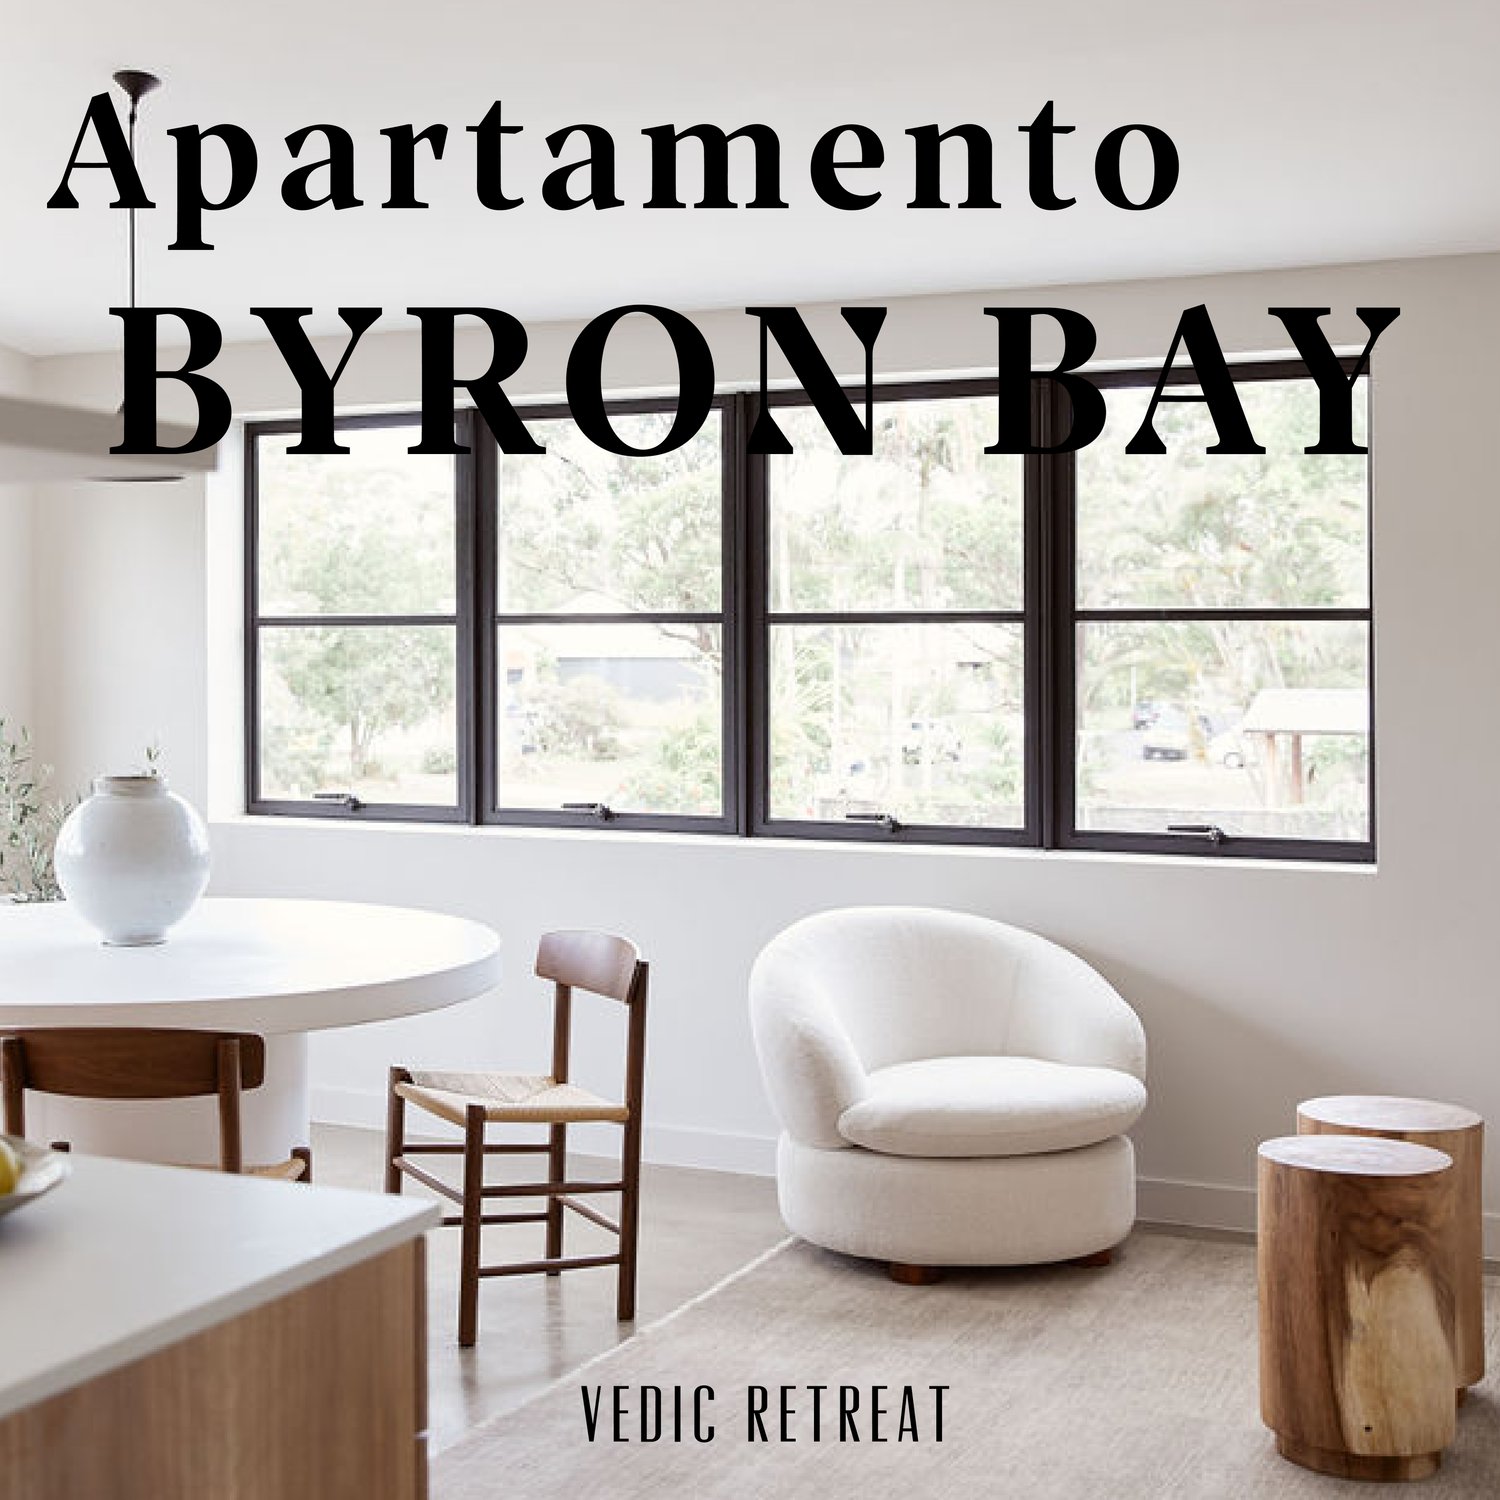 Image of RETREAT - Apartamento x The Veda Way Byron Bay